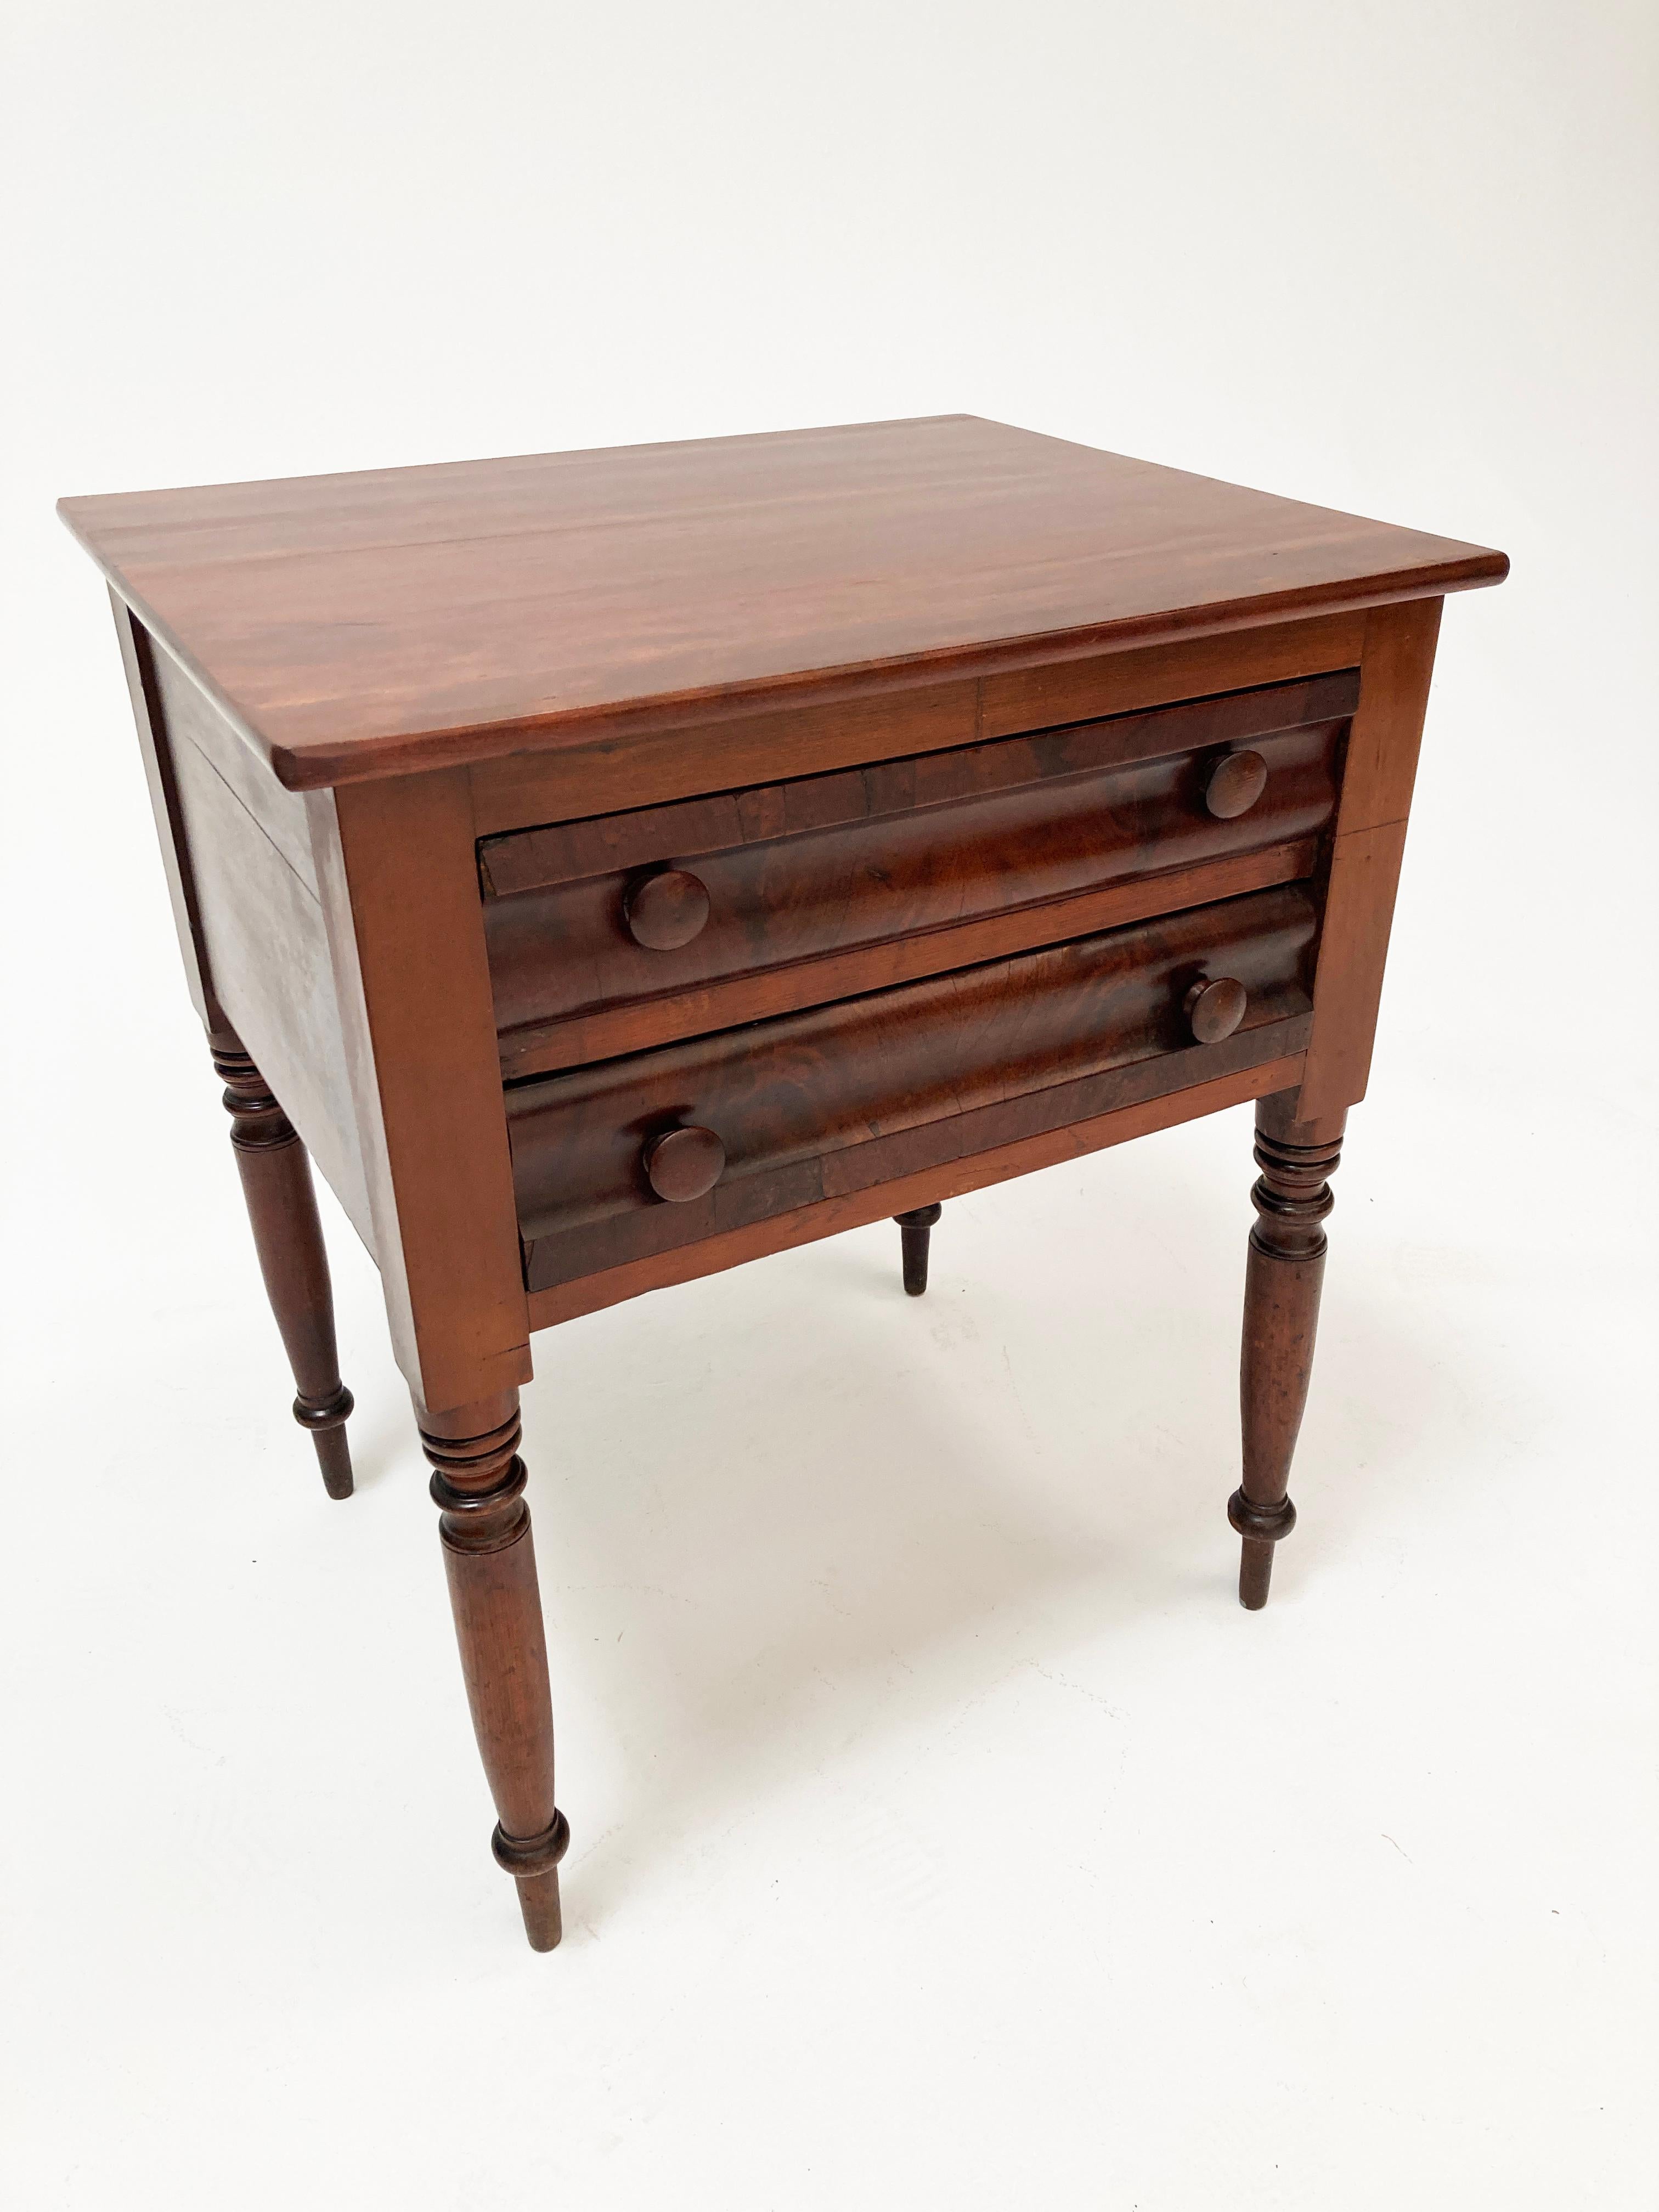 Dieser wunderschöne Tisch aus der amerikanischen Federal-Periode ist ein schönes Spiegelbild der frühen 1800er Jahre. Mit seinen handgedrechselten Beinen, den einzigartigen unregelmäßigen Linien und Kurven, die das Handwerkszeug eines Baumeisters